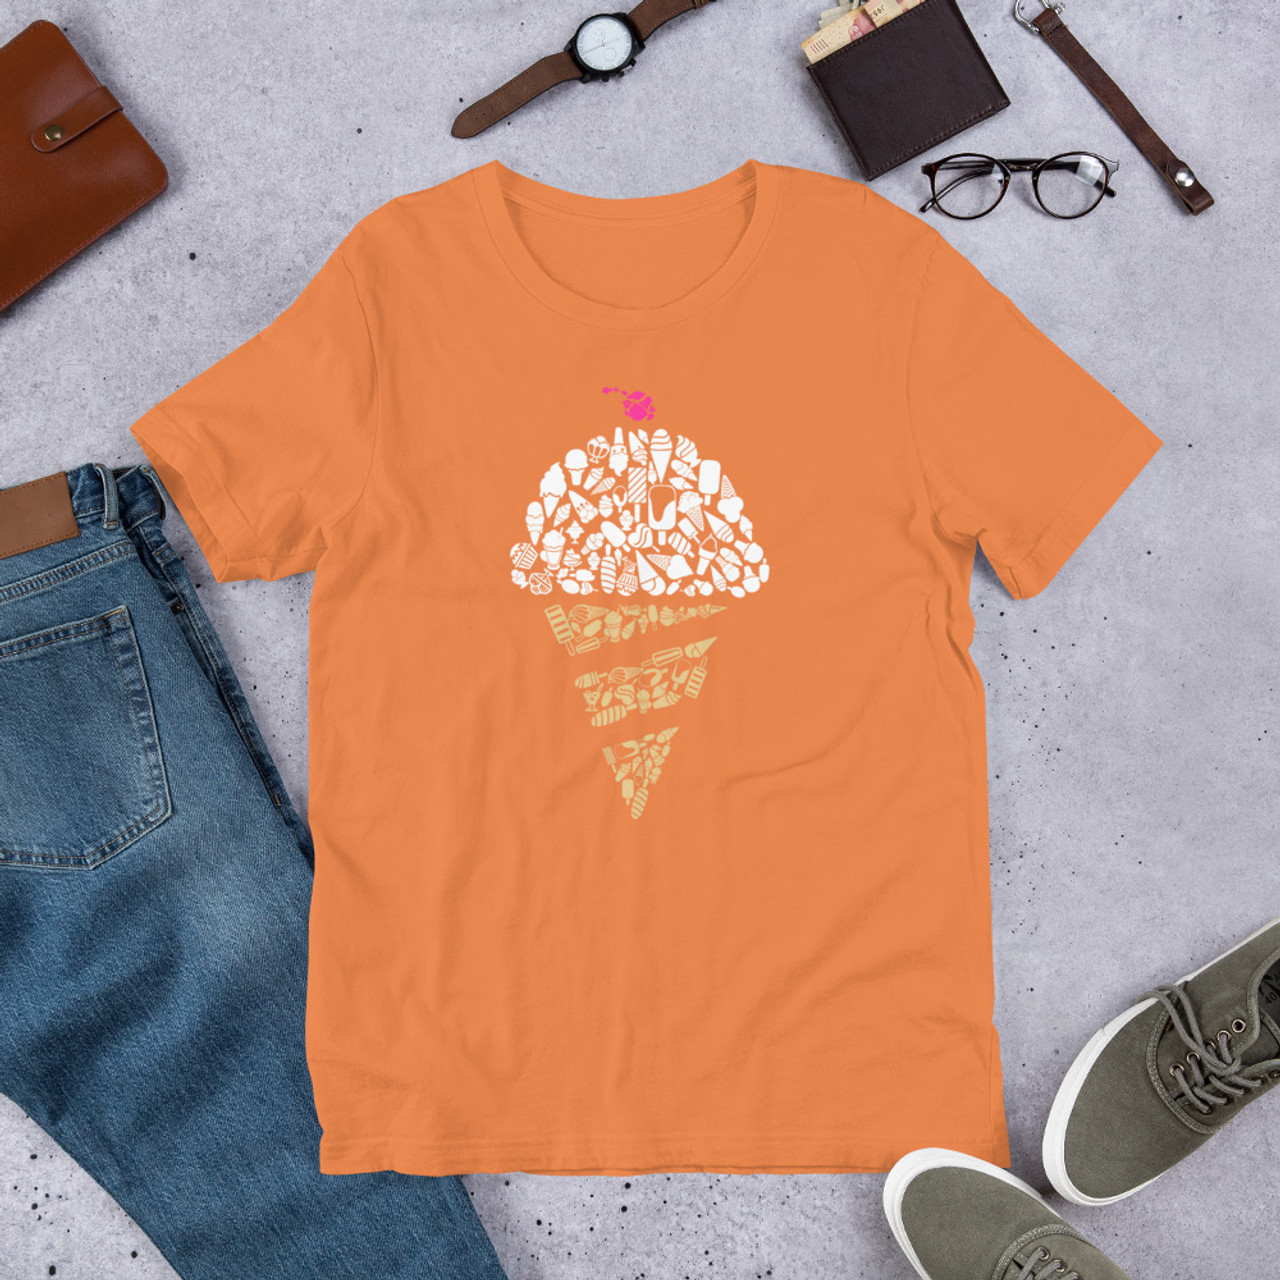 Burnt Orange T-Shirt - Bella + Canvas 3001 Ice Cream